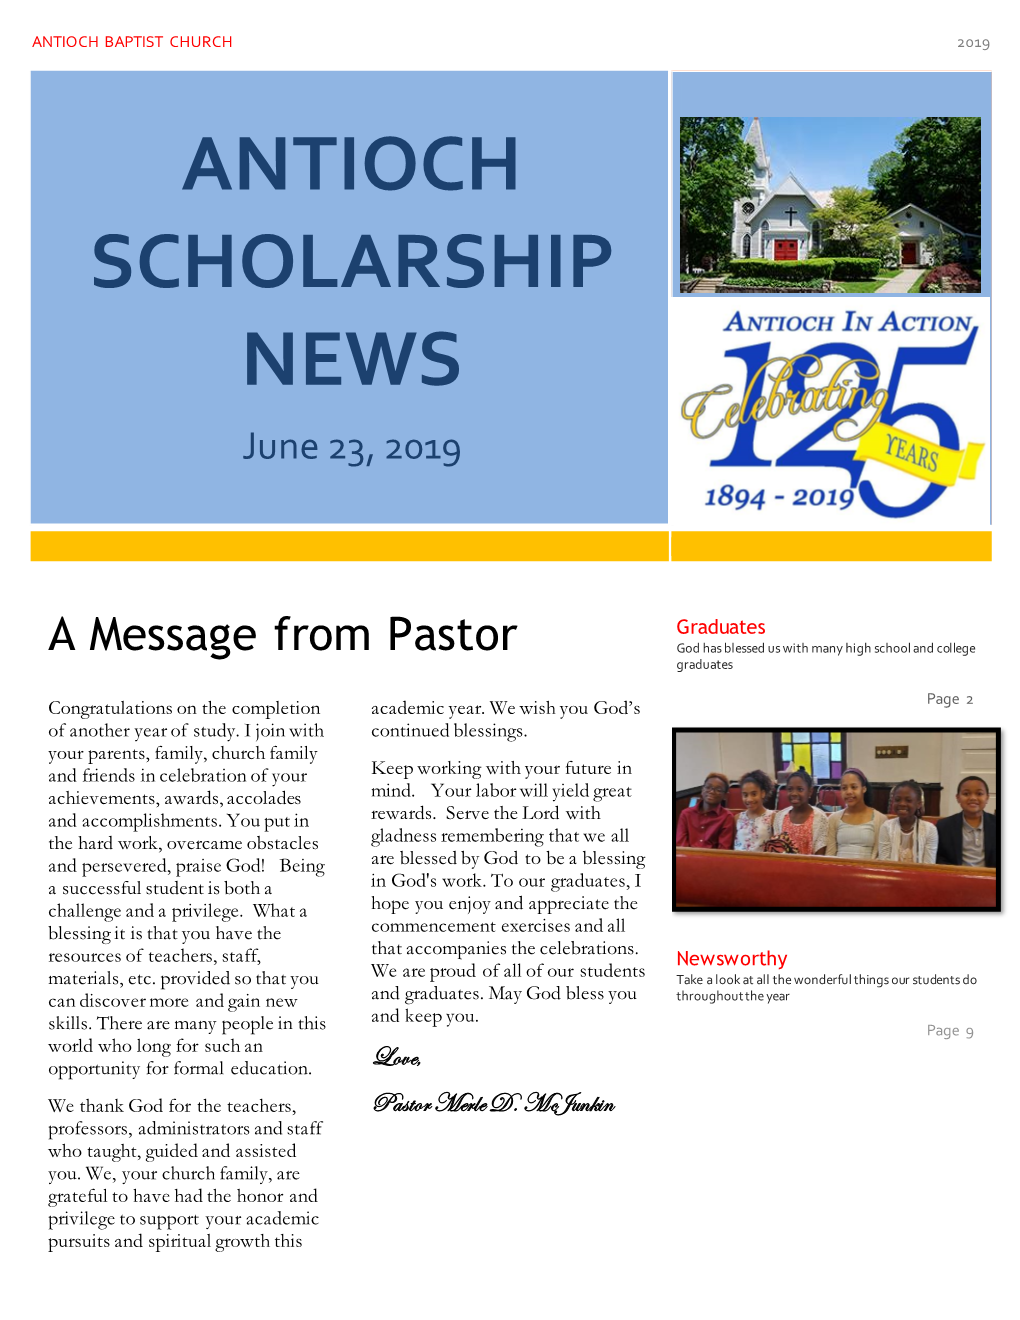 Antioch Scholarship News